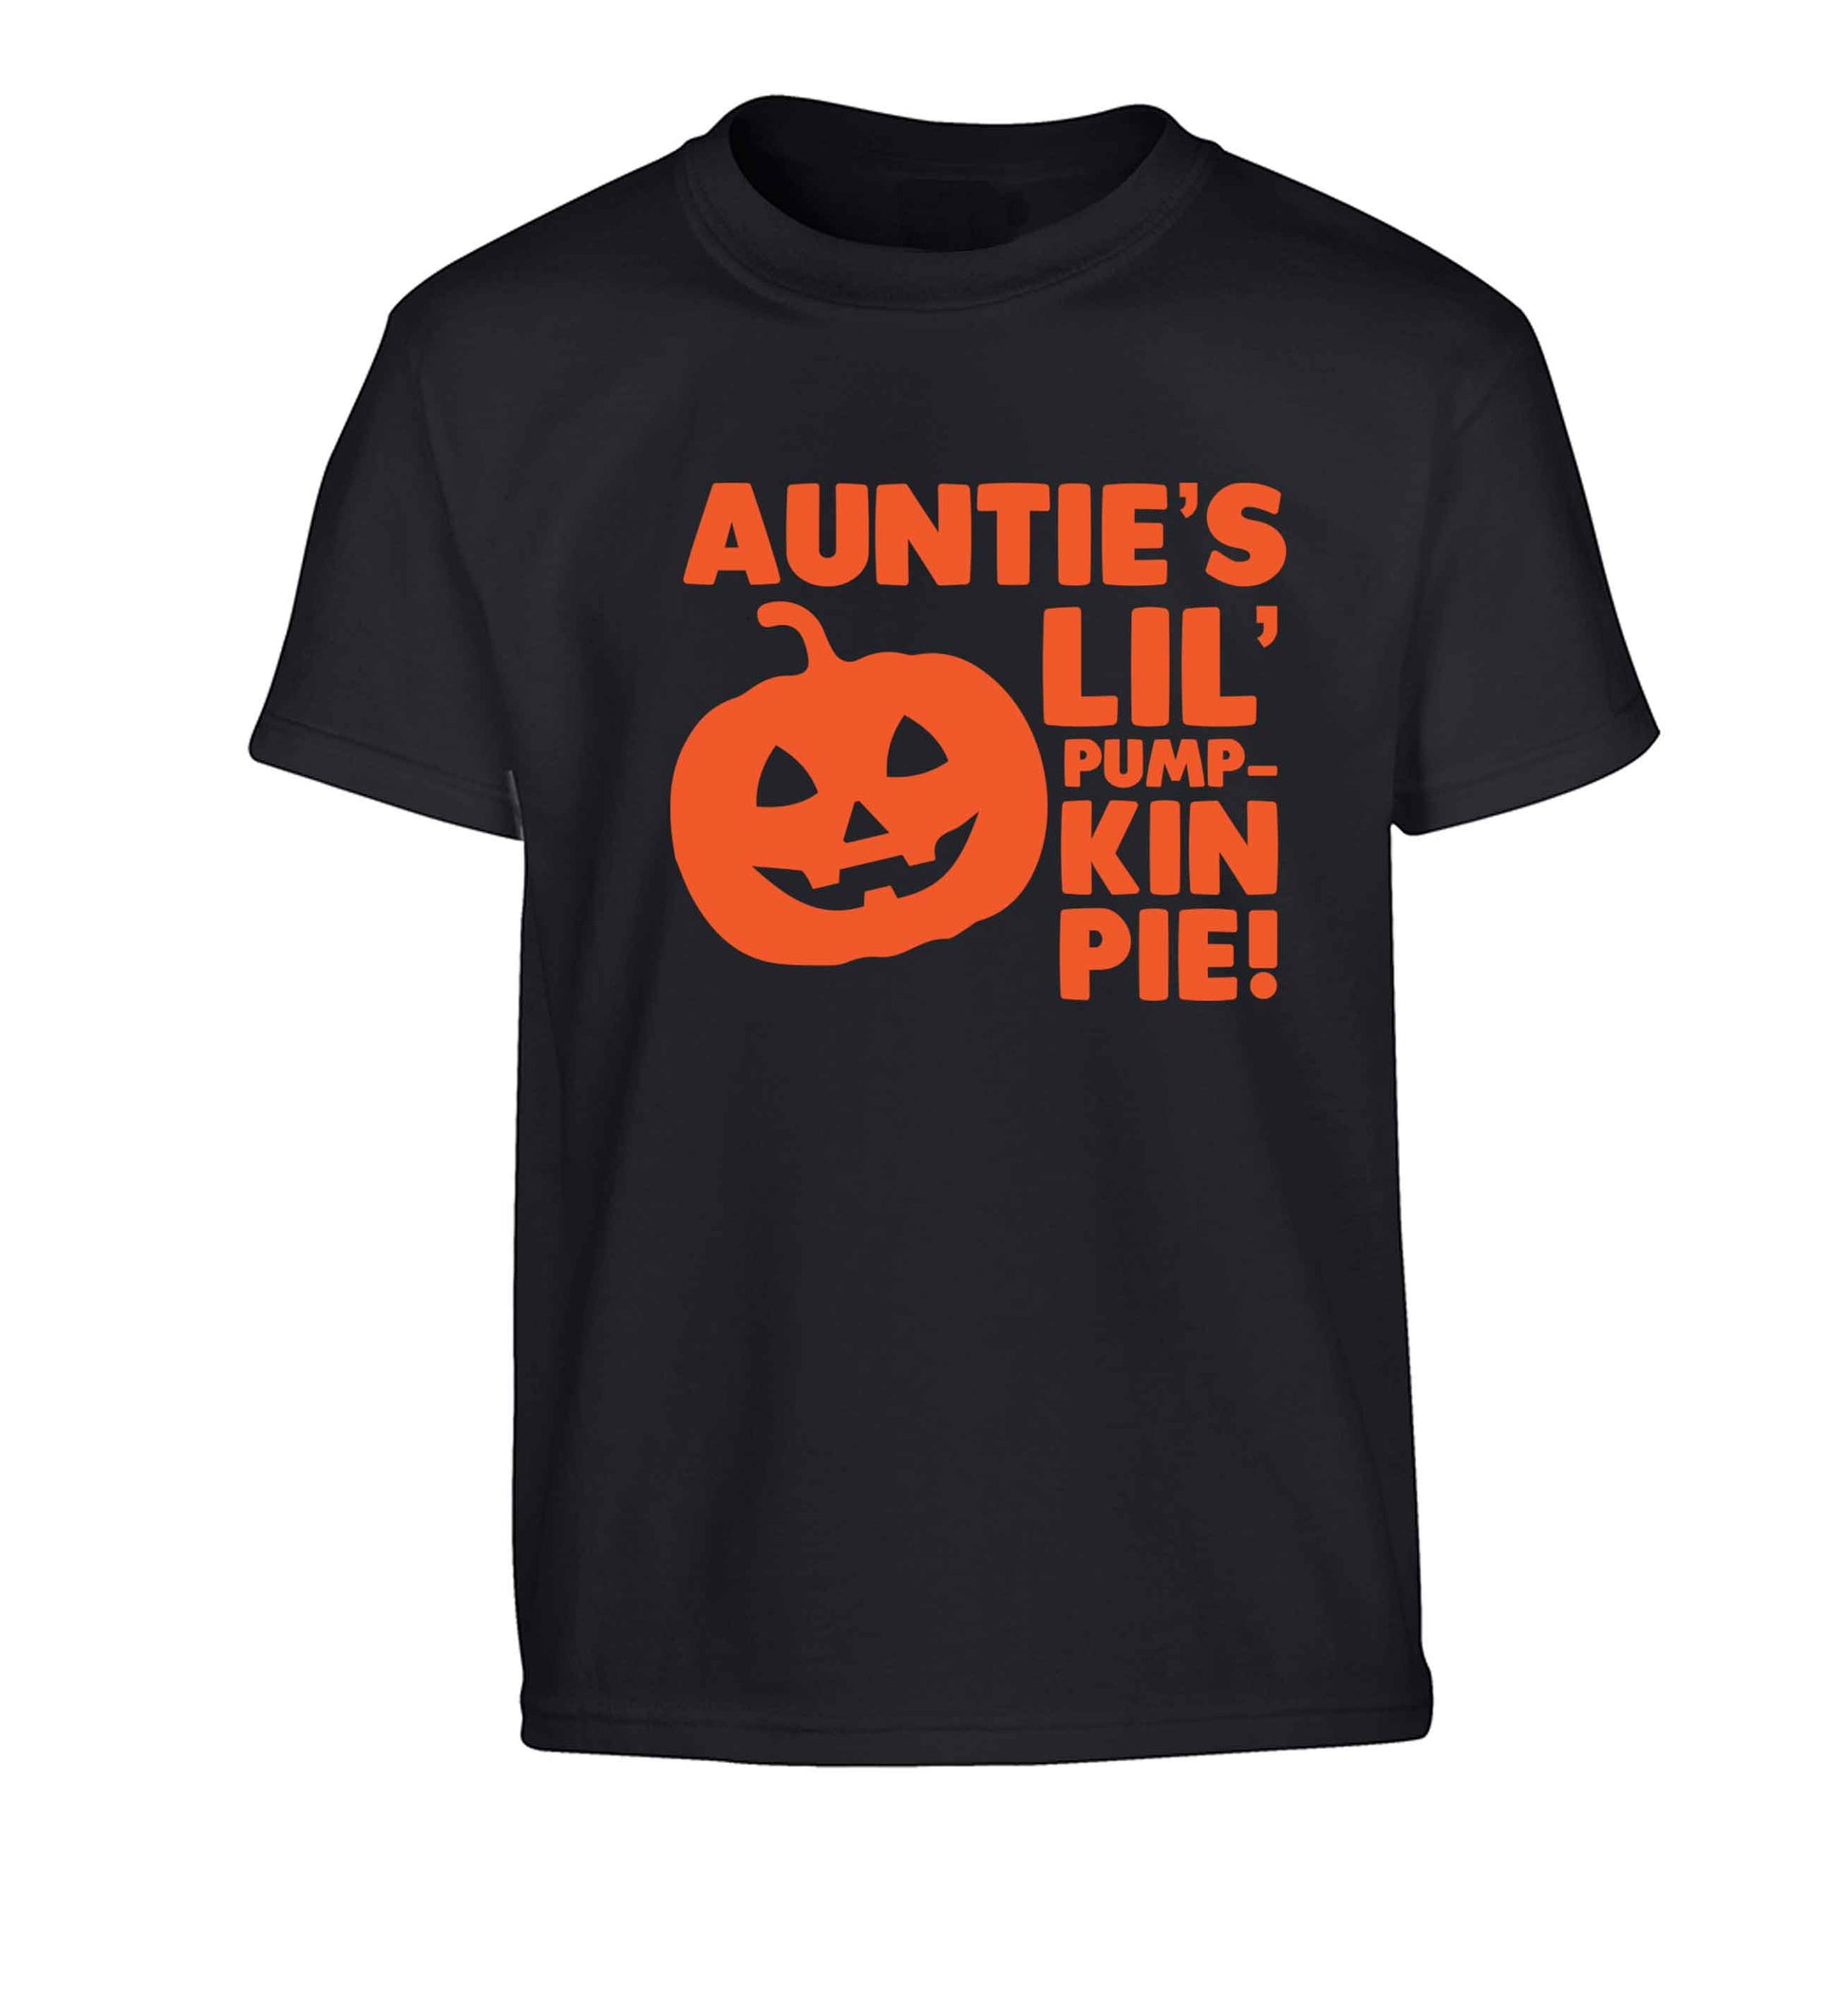 Auntie's lil' pumpkin pie Children's black Tshirt 12-13 Years